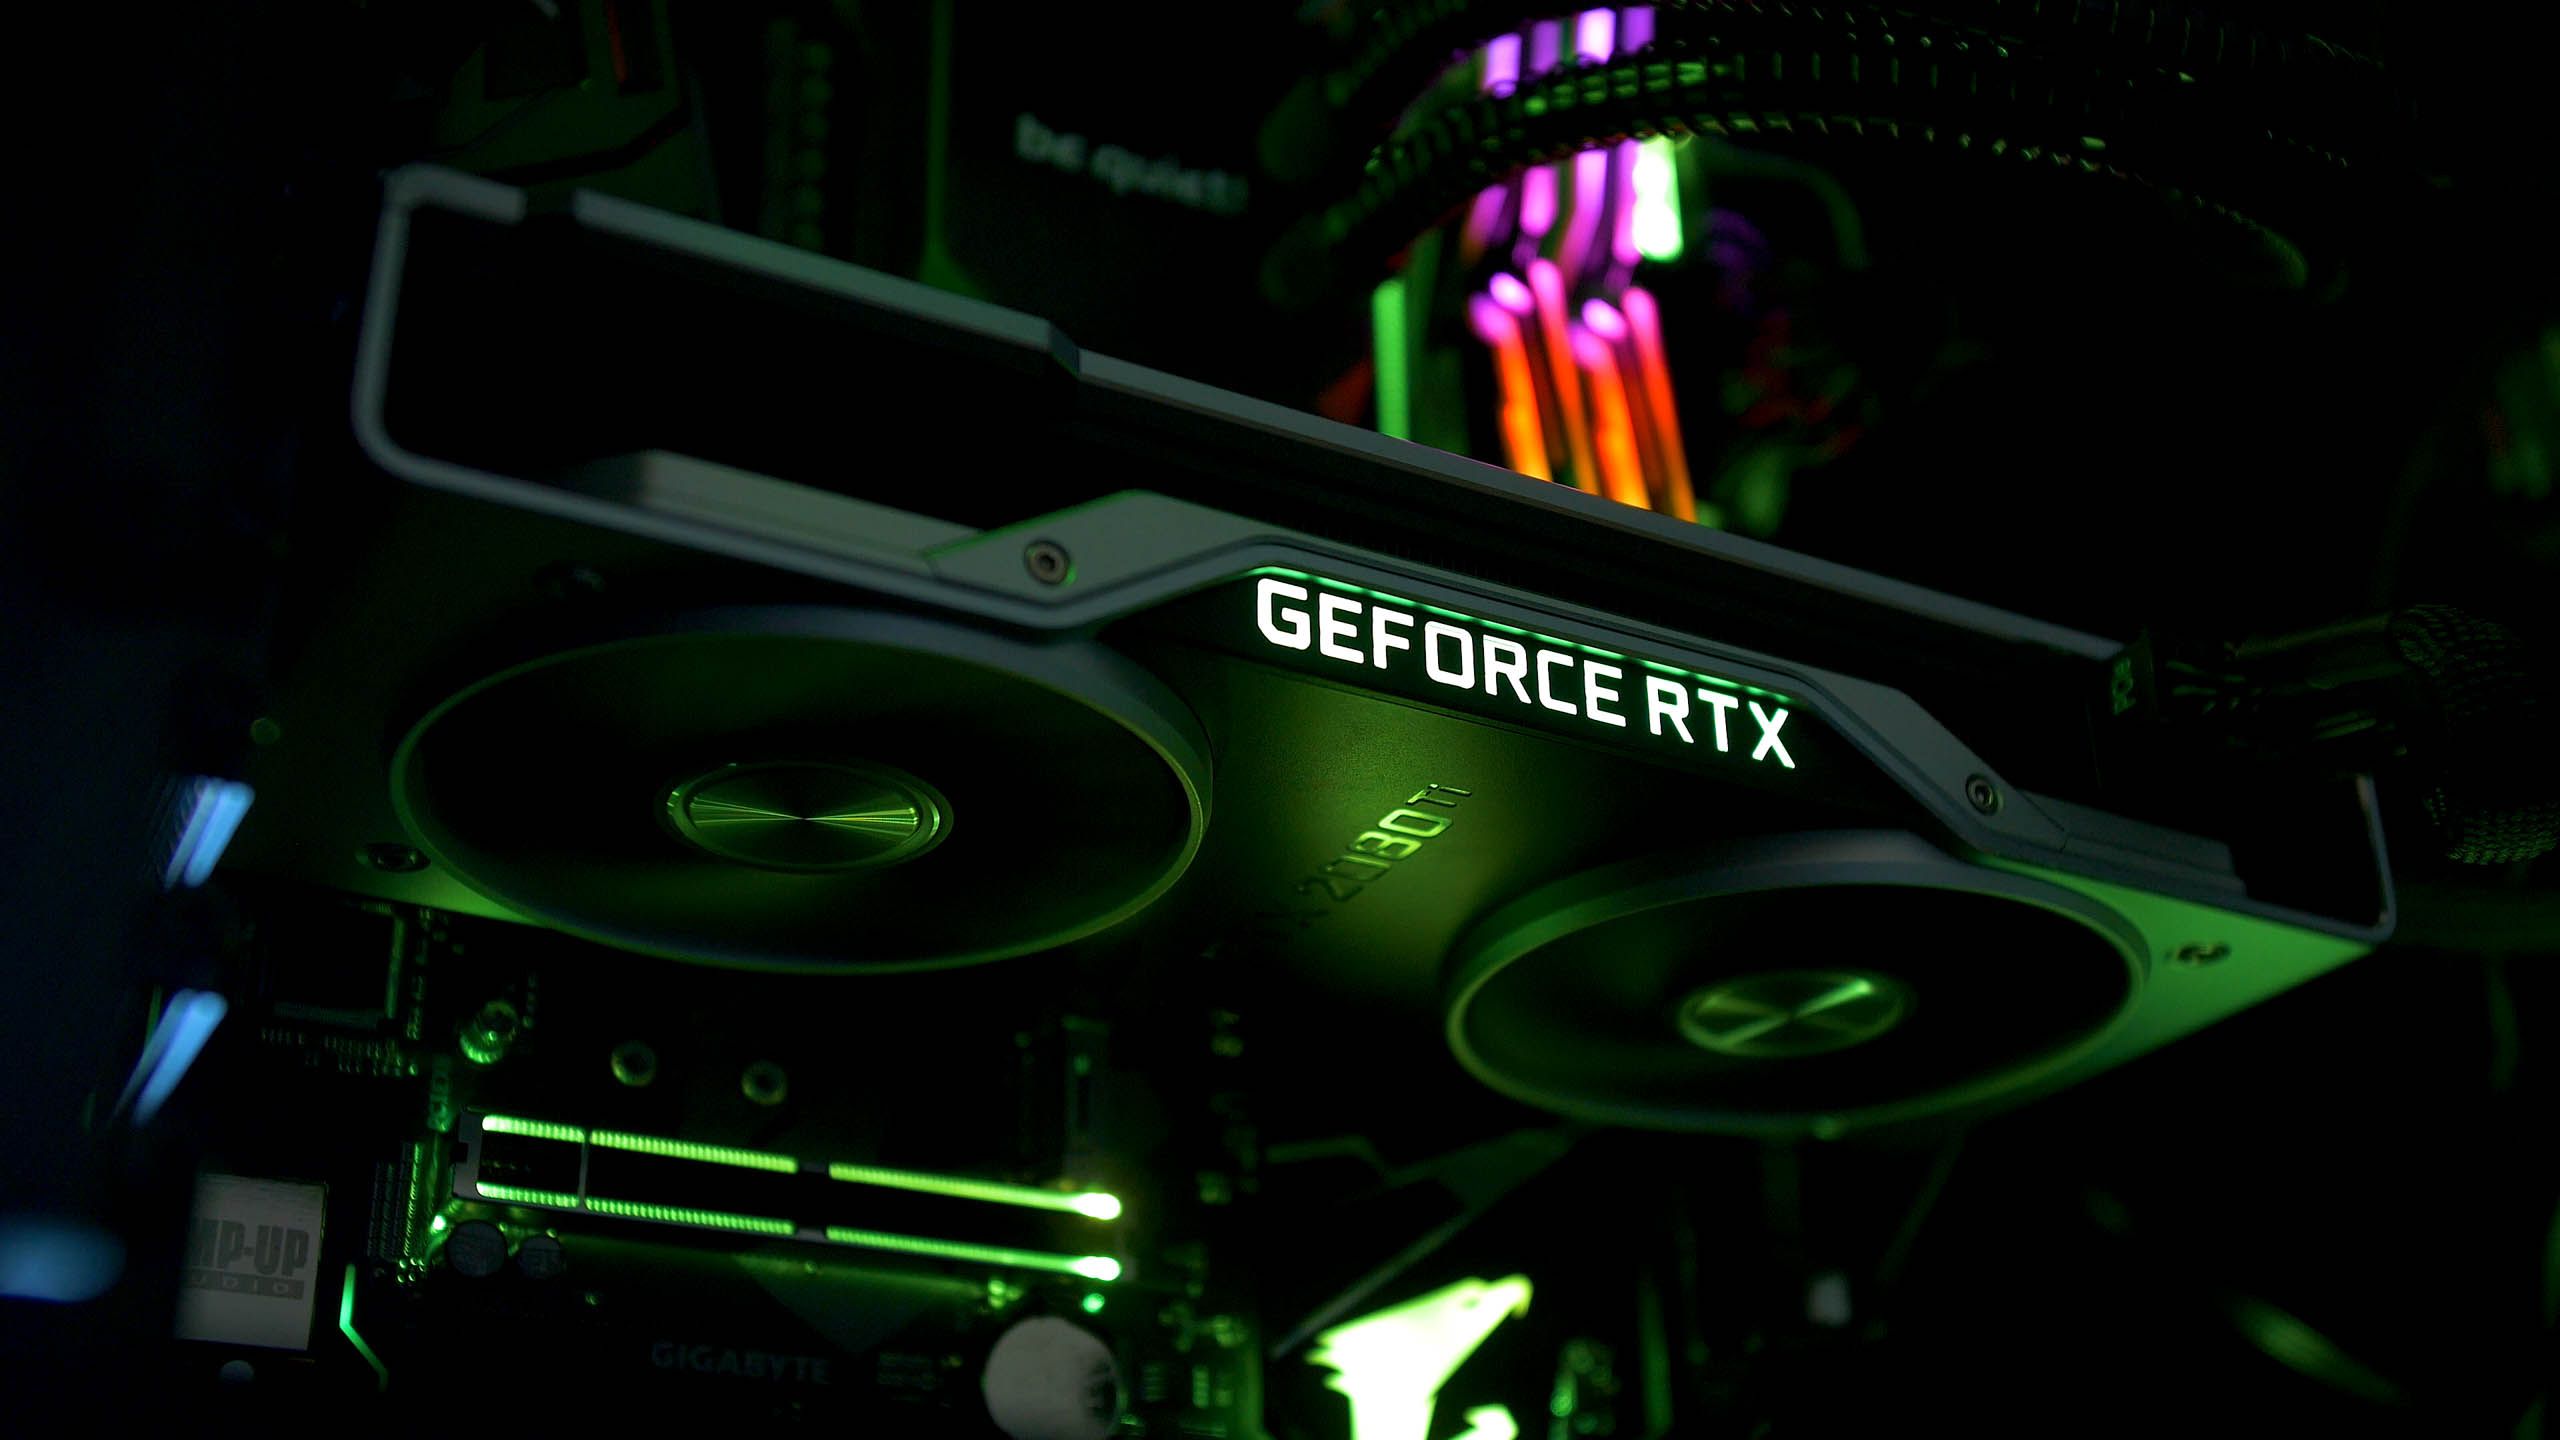 GeForce RTX Wallpaper Free GeForce RTX Background